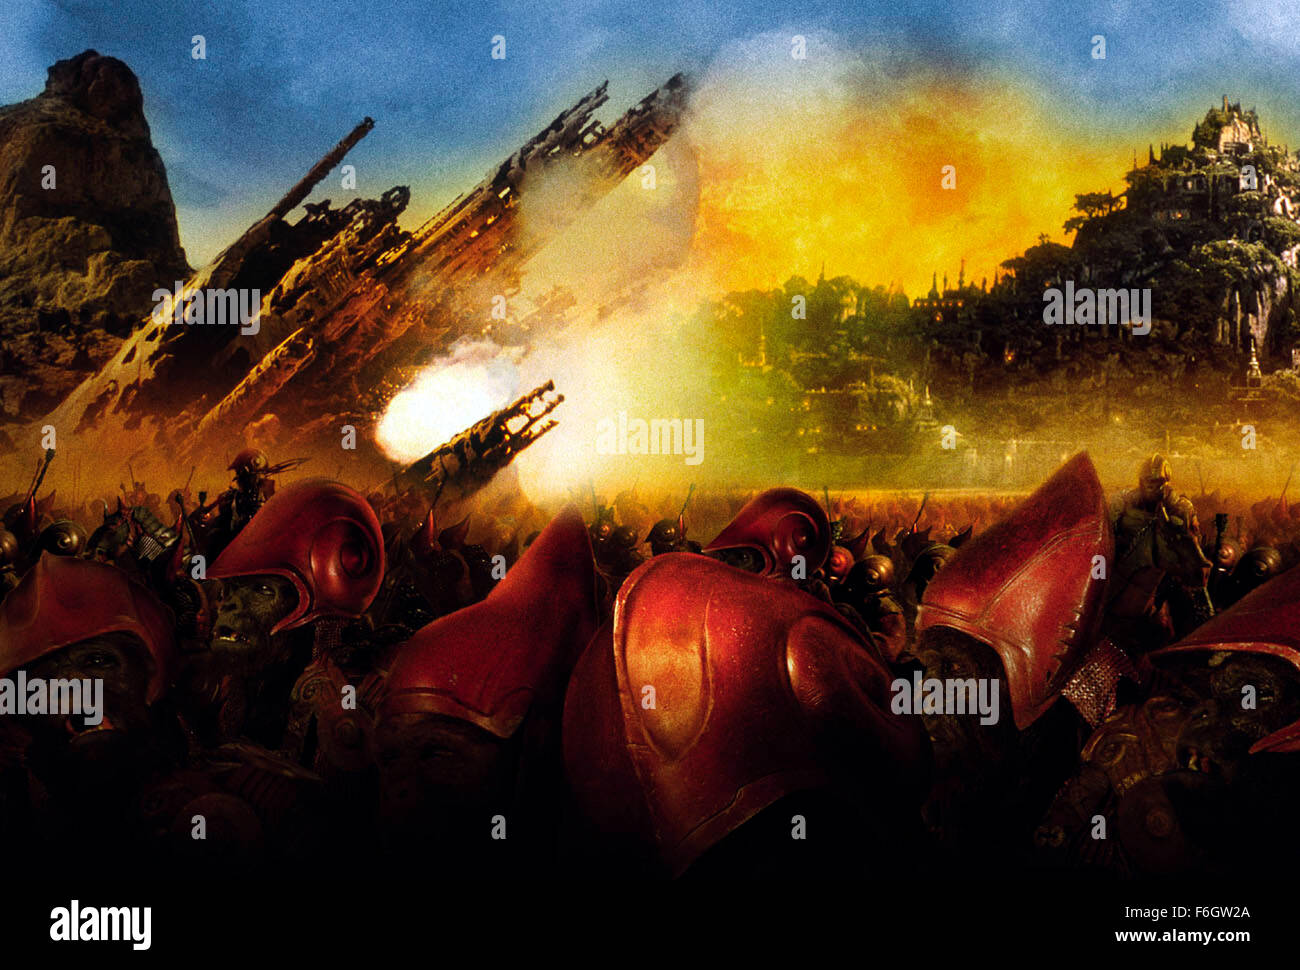 26. Juli 2001; Los Angeles, Kalifornien, USA; Szene aus dem Sci-Fi-Action-Film "Planet der Affen" unter der Regie von Tim Burton. Stockfoto